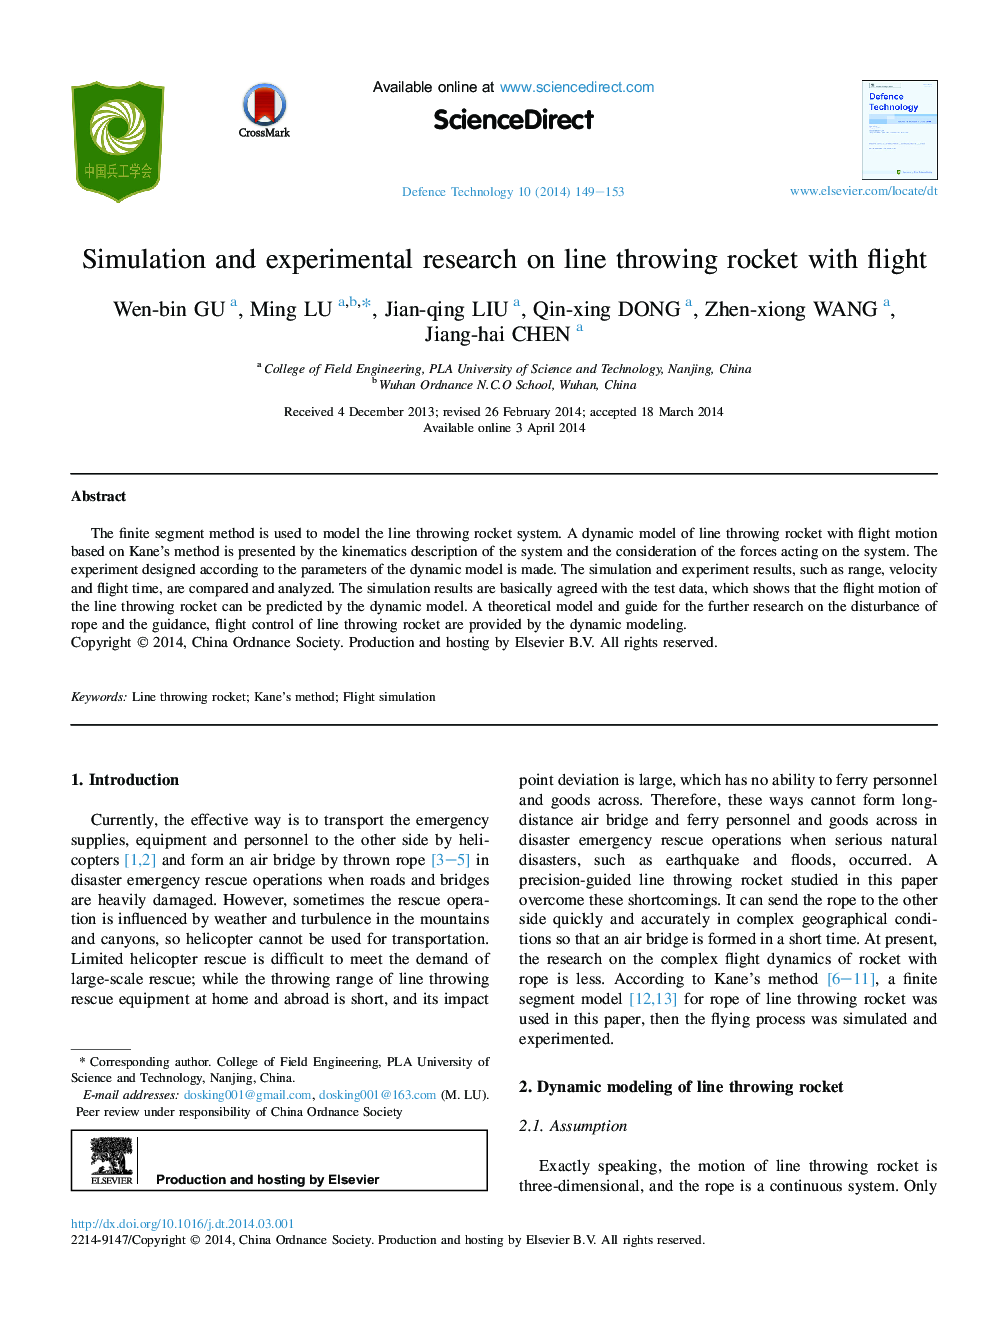 شبیه سازی و تحقیق تجربی بر روی پرتاب خط پرواز با پرواز 